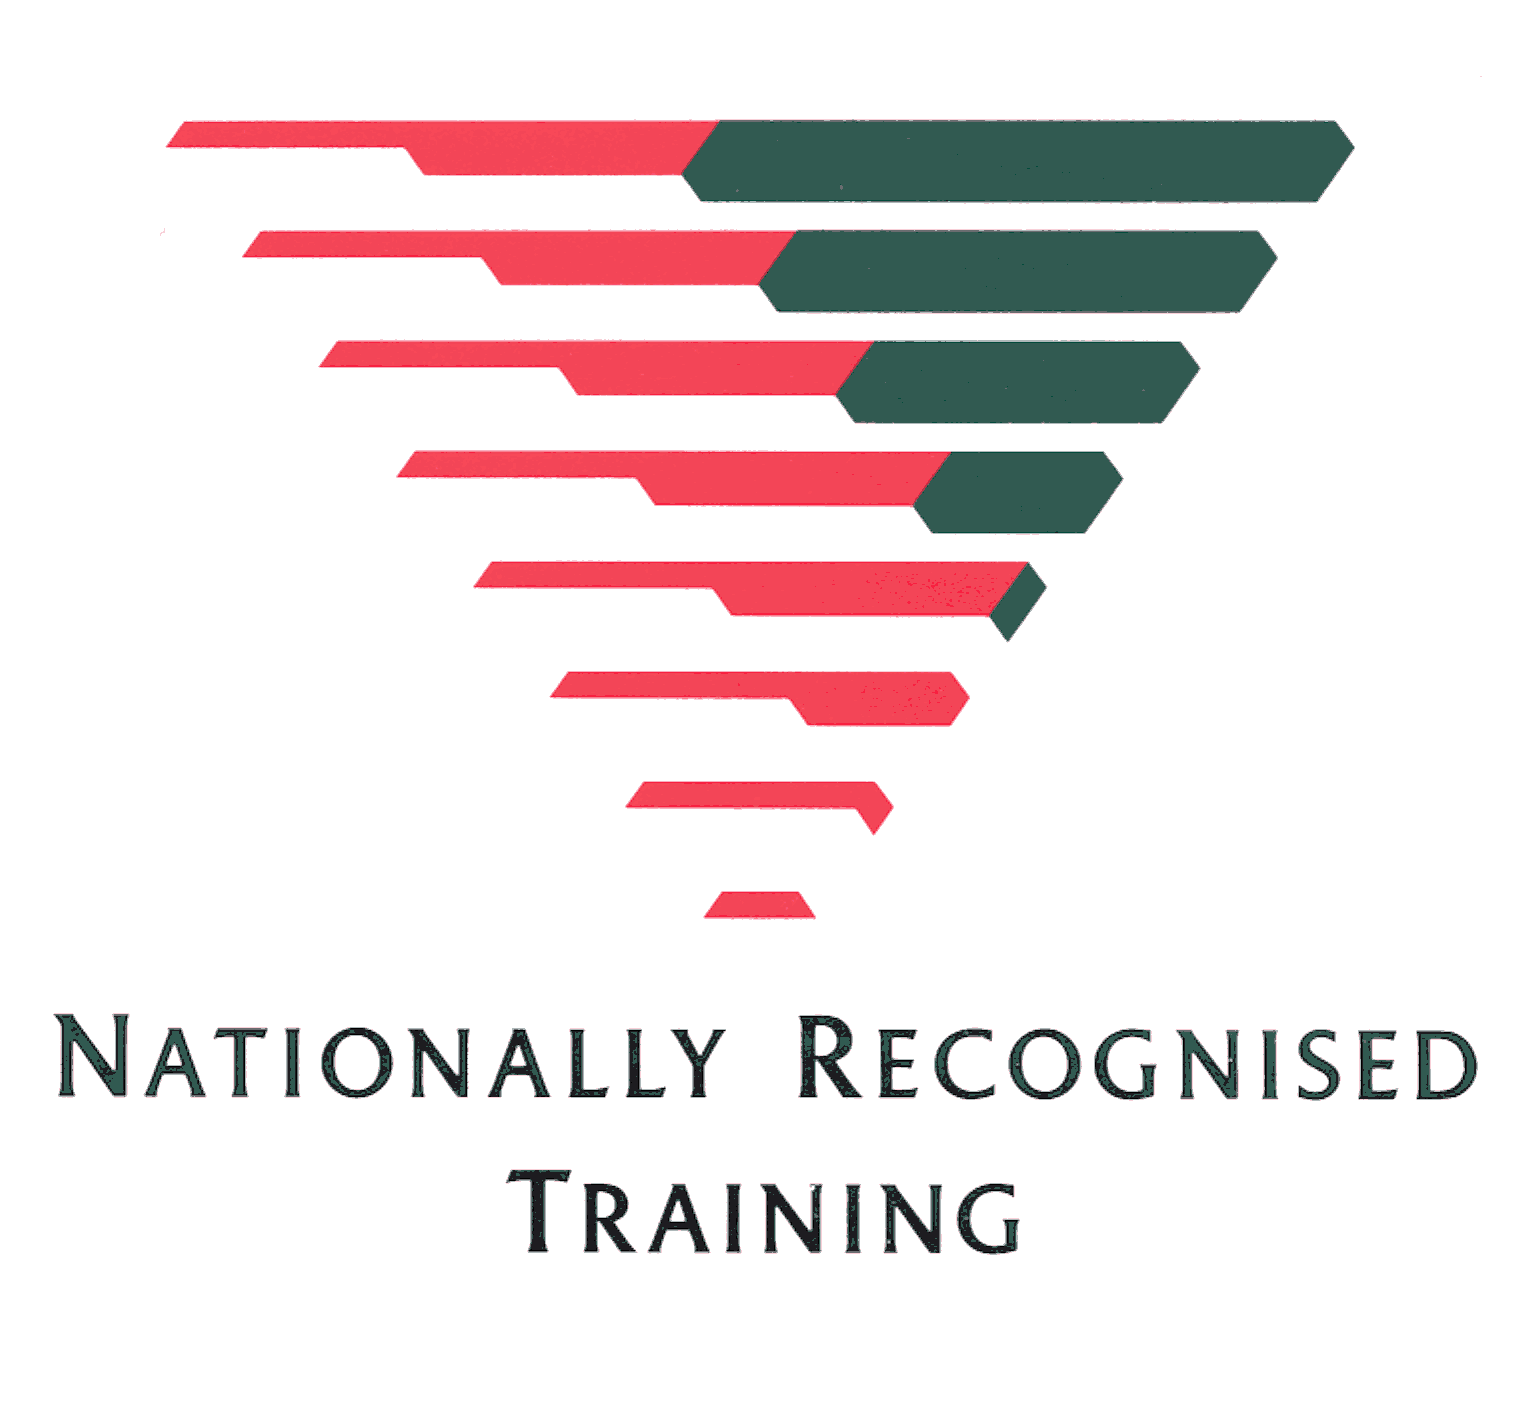 Nationally Recognized Training